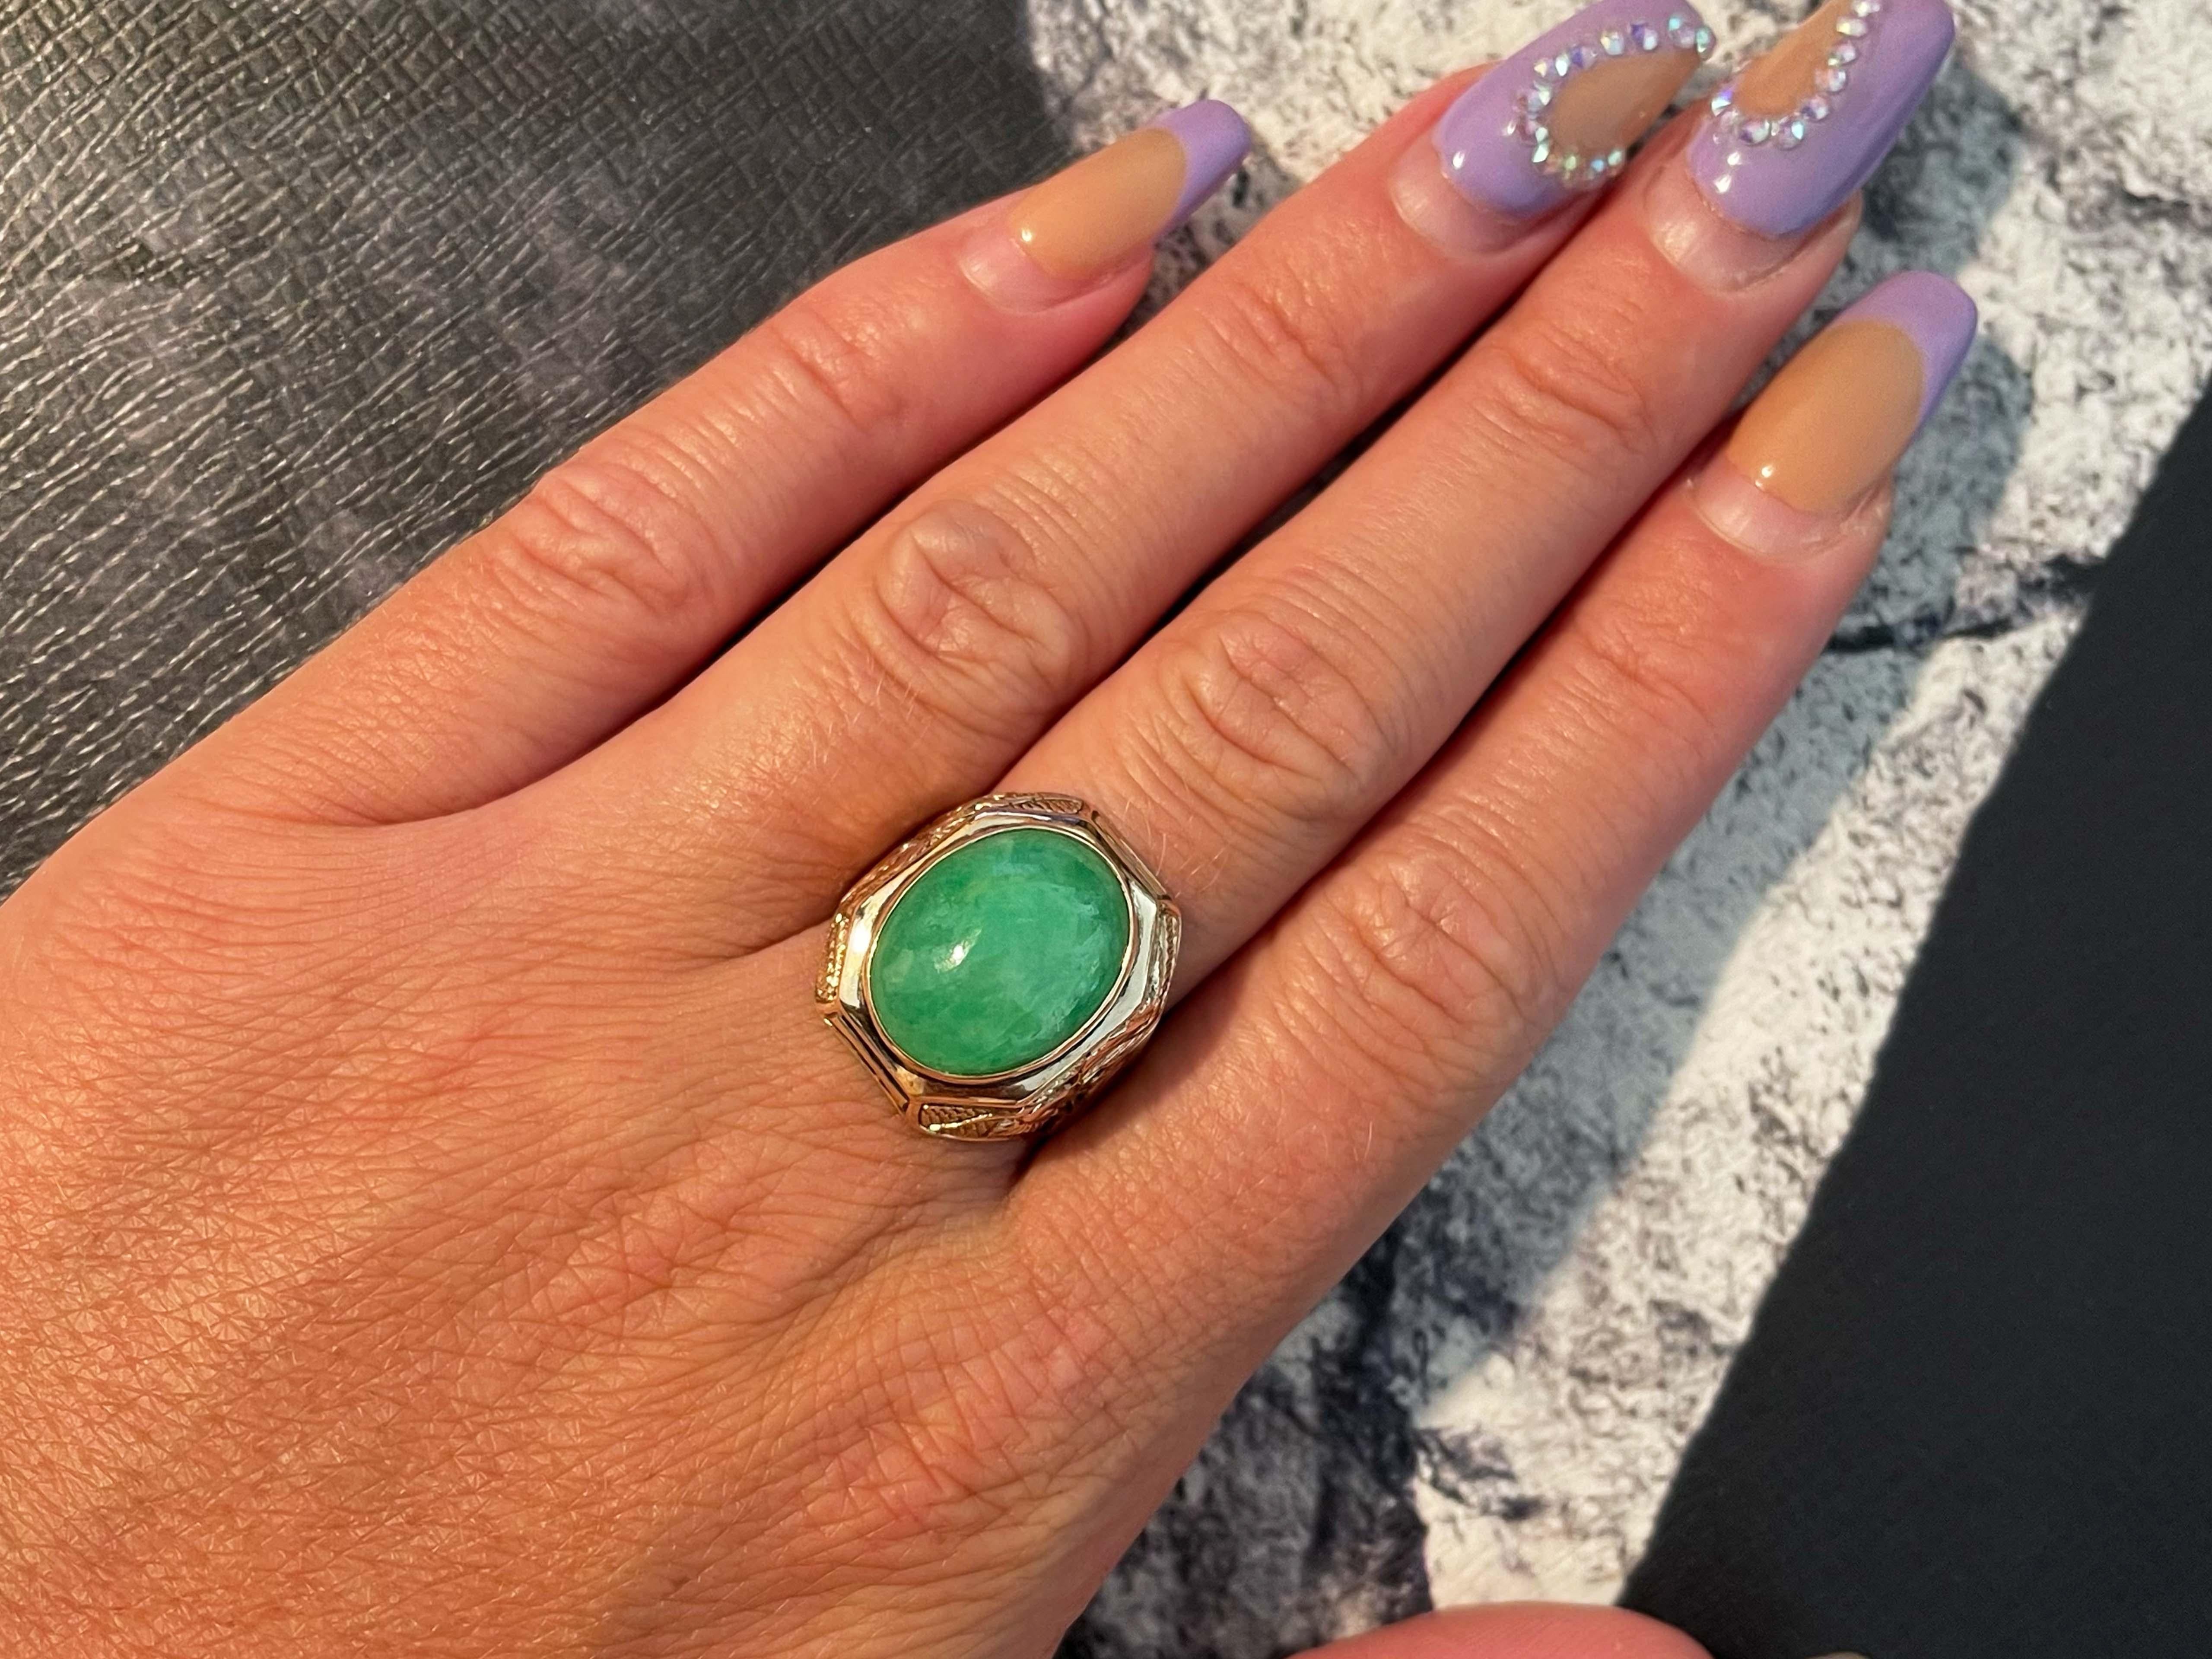 Wunderschöner ovaler Cabochon-Ring aus grünem Jadeit in 14 Karat Roségold. Die schöne grün gesprenkelte Jade ist in eine Lünette gefasst und misst etwa 16,29 mm x 13,03 mm x 7,28 mm. Der Ring hat einen sich verjüngenden Schaft mit einem